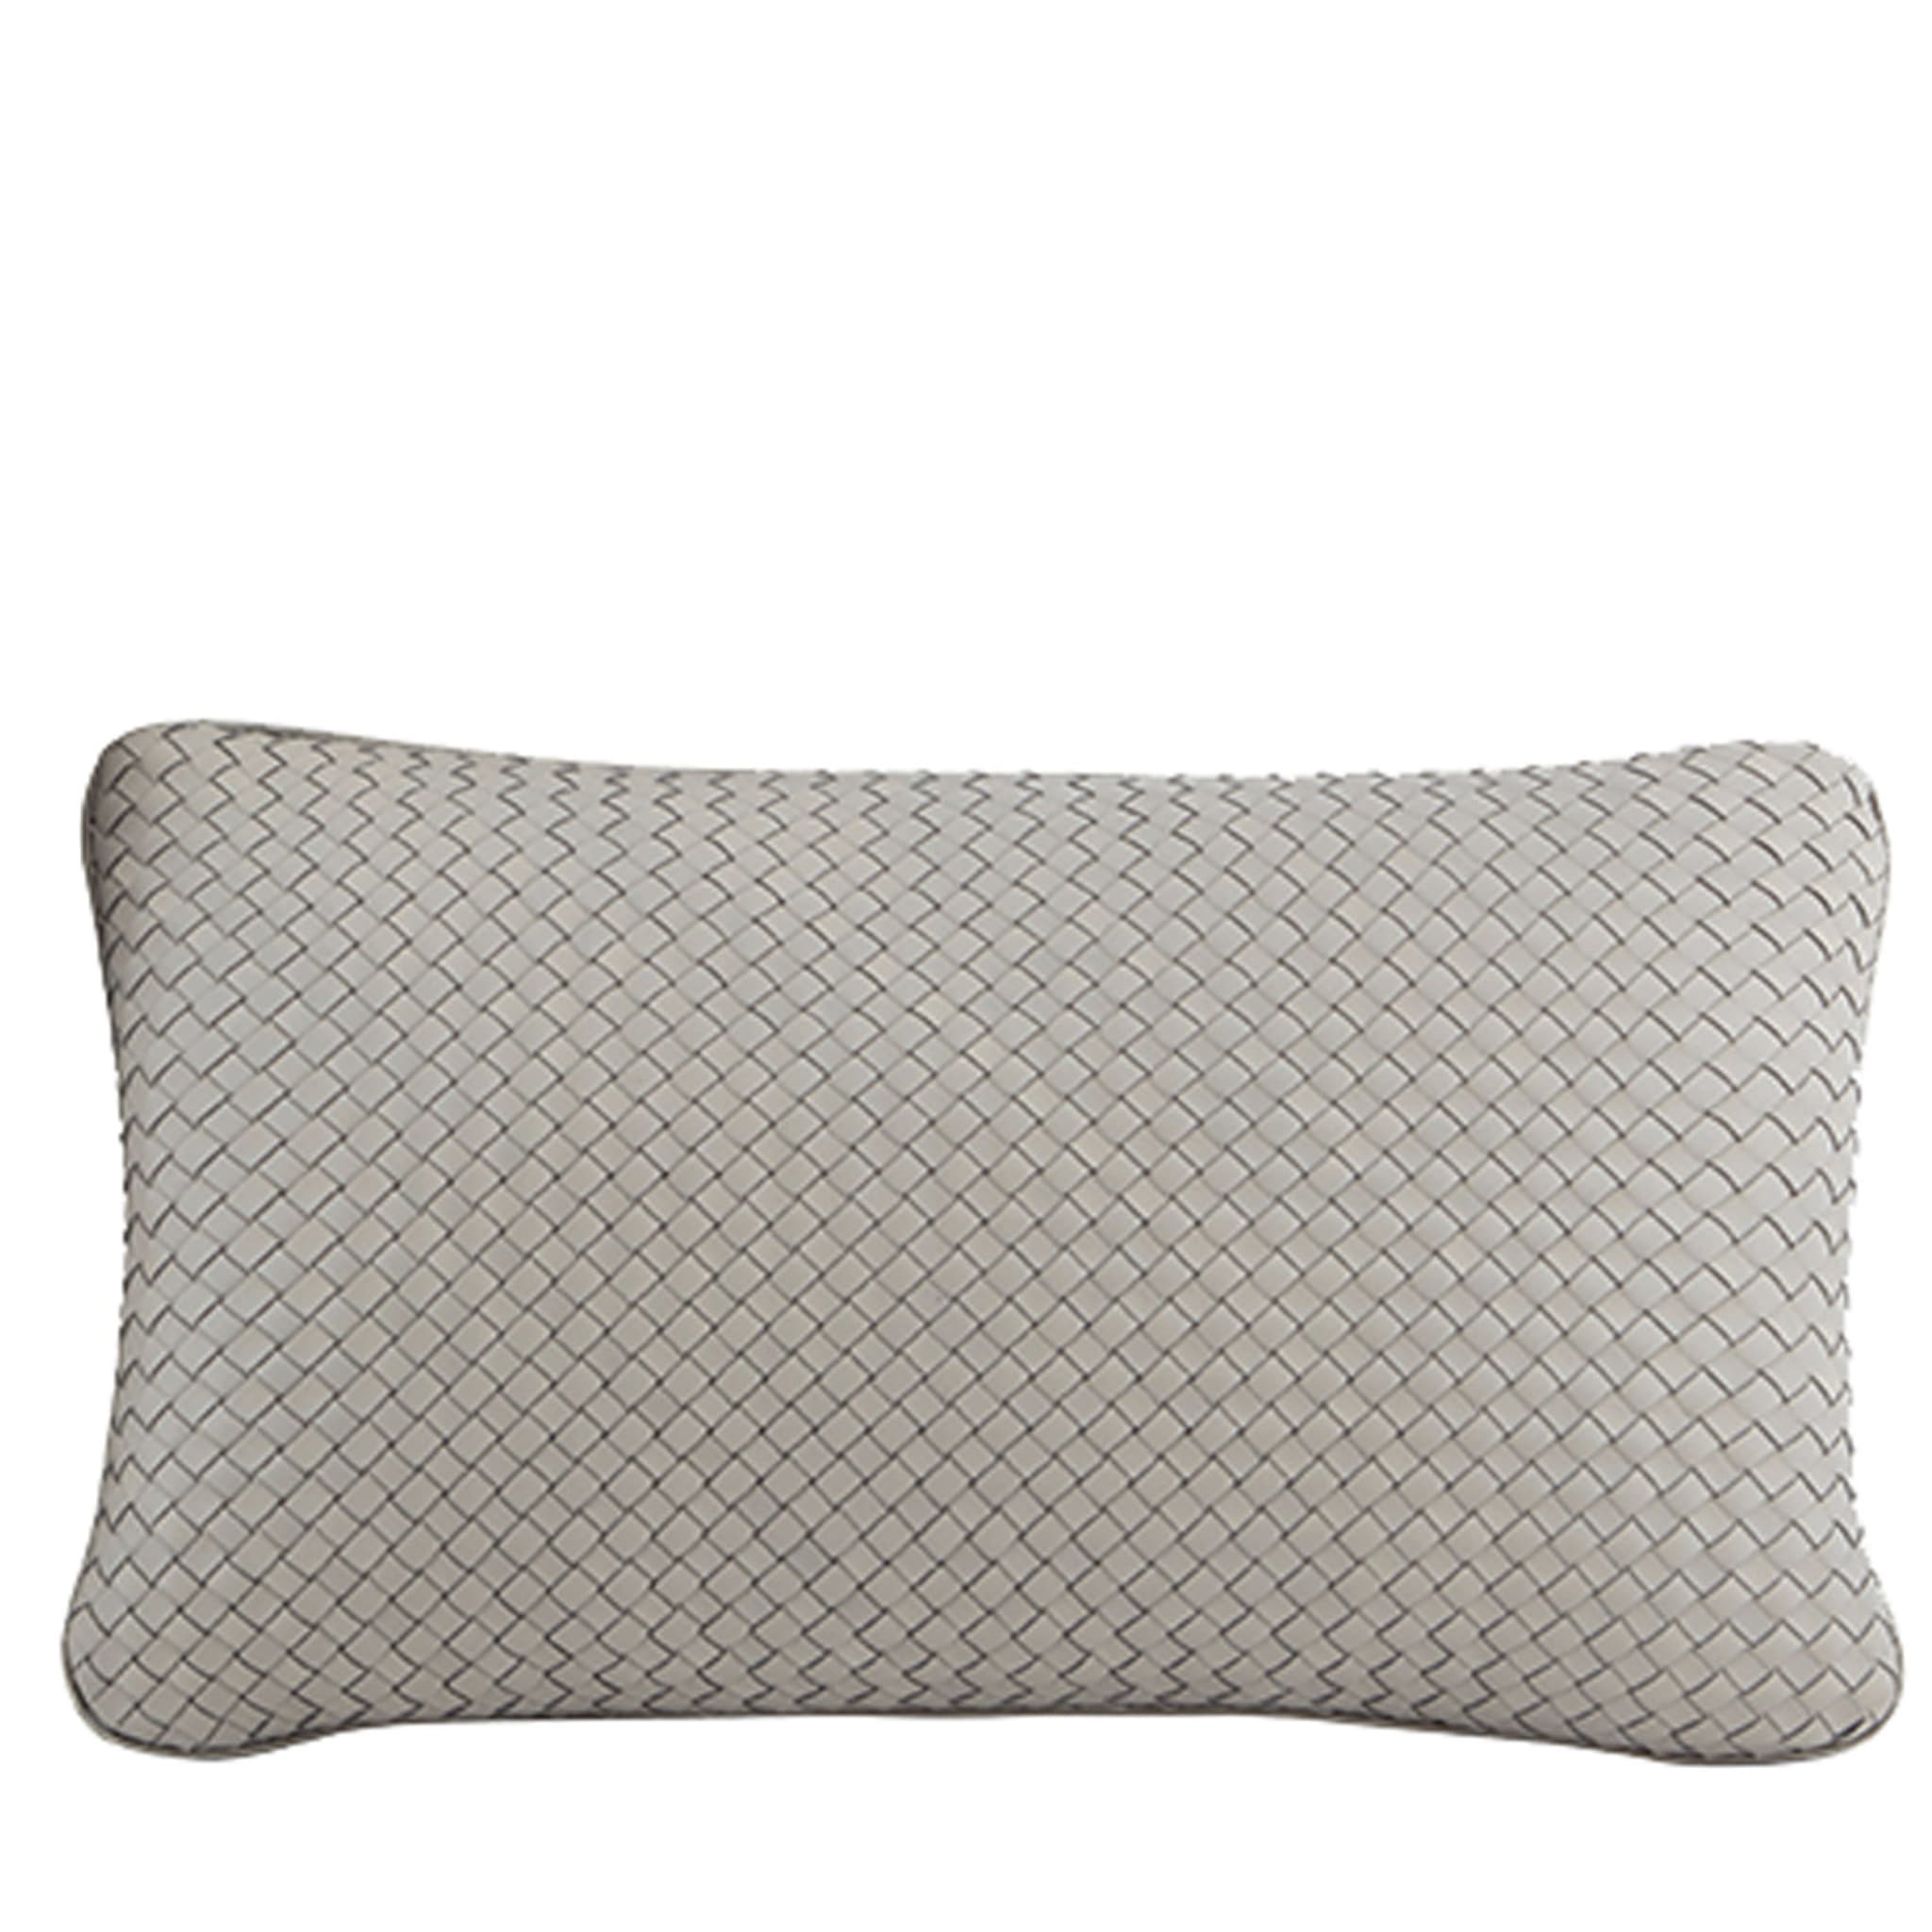 Oniro Handwoven Rectangular Cushion - Main view